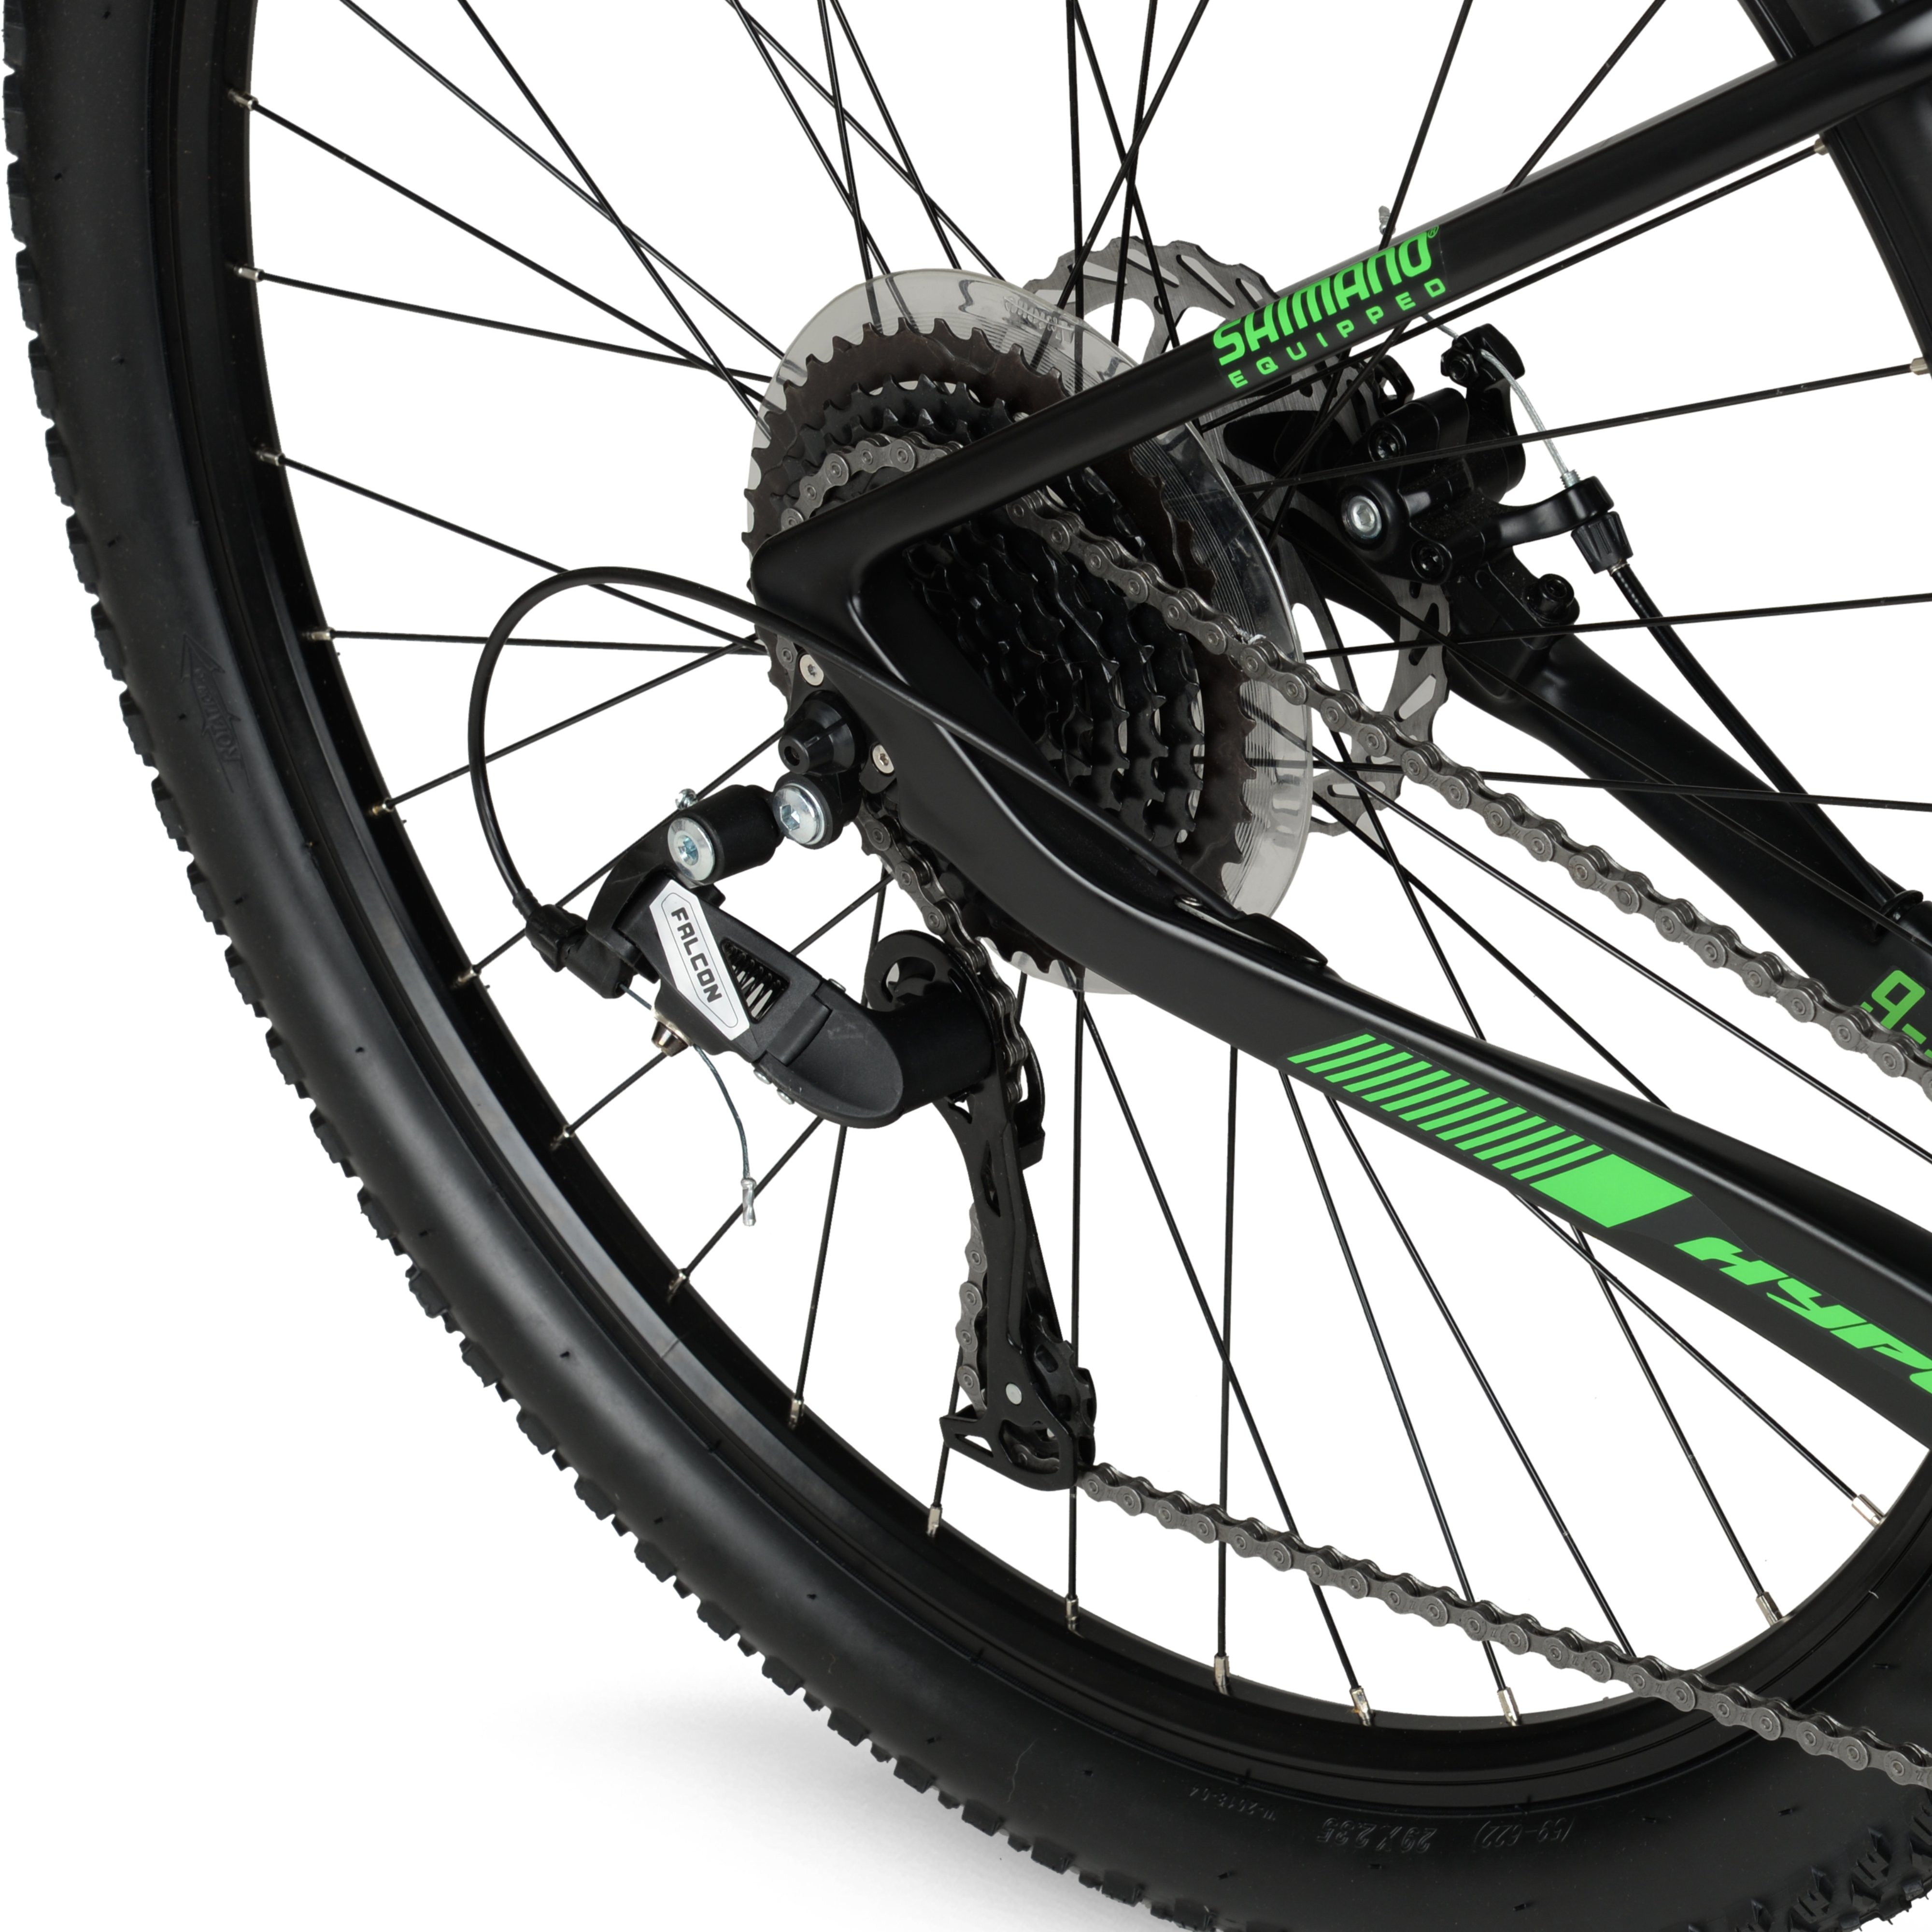 Hyper 29" Carbon Fiber Men's Mountain Bike, Black/Green - image 7 of 12